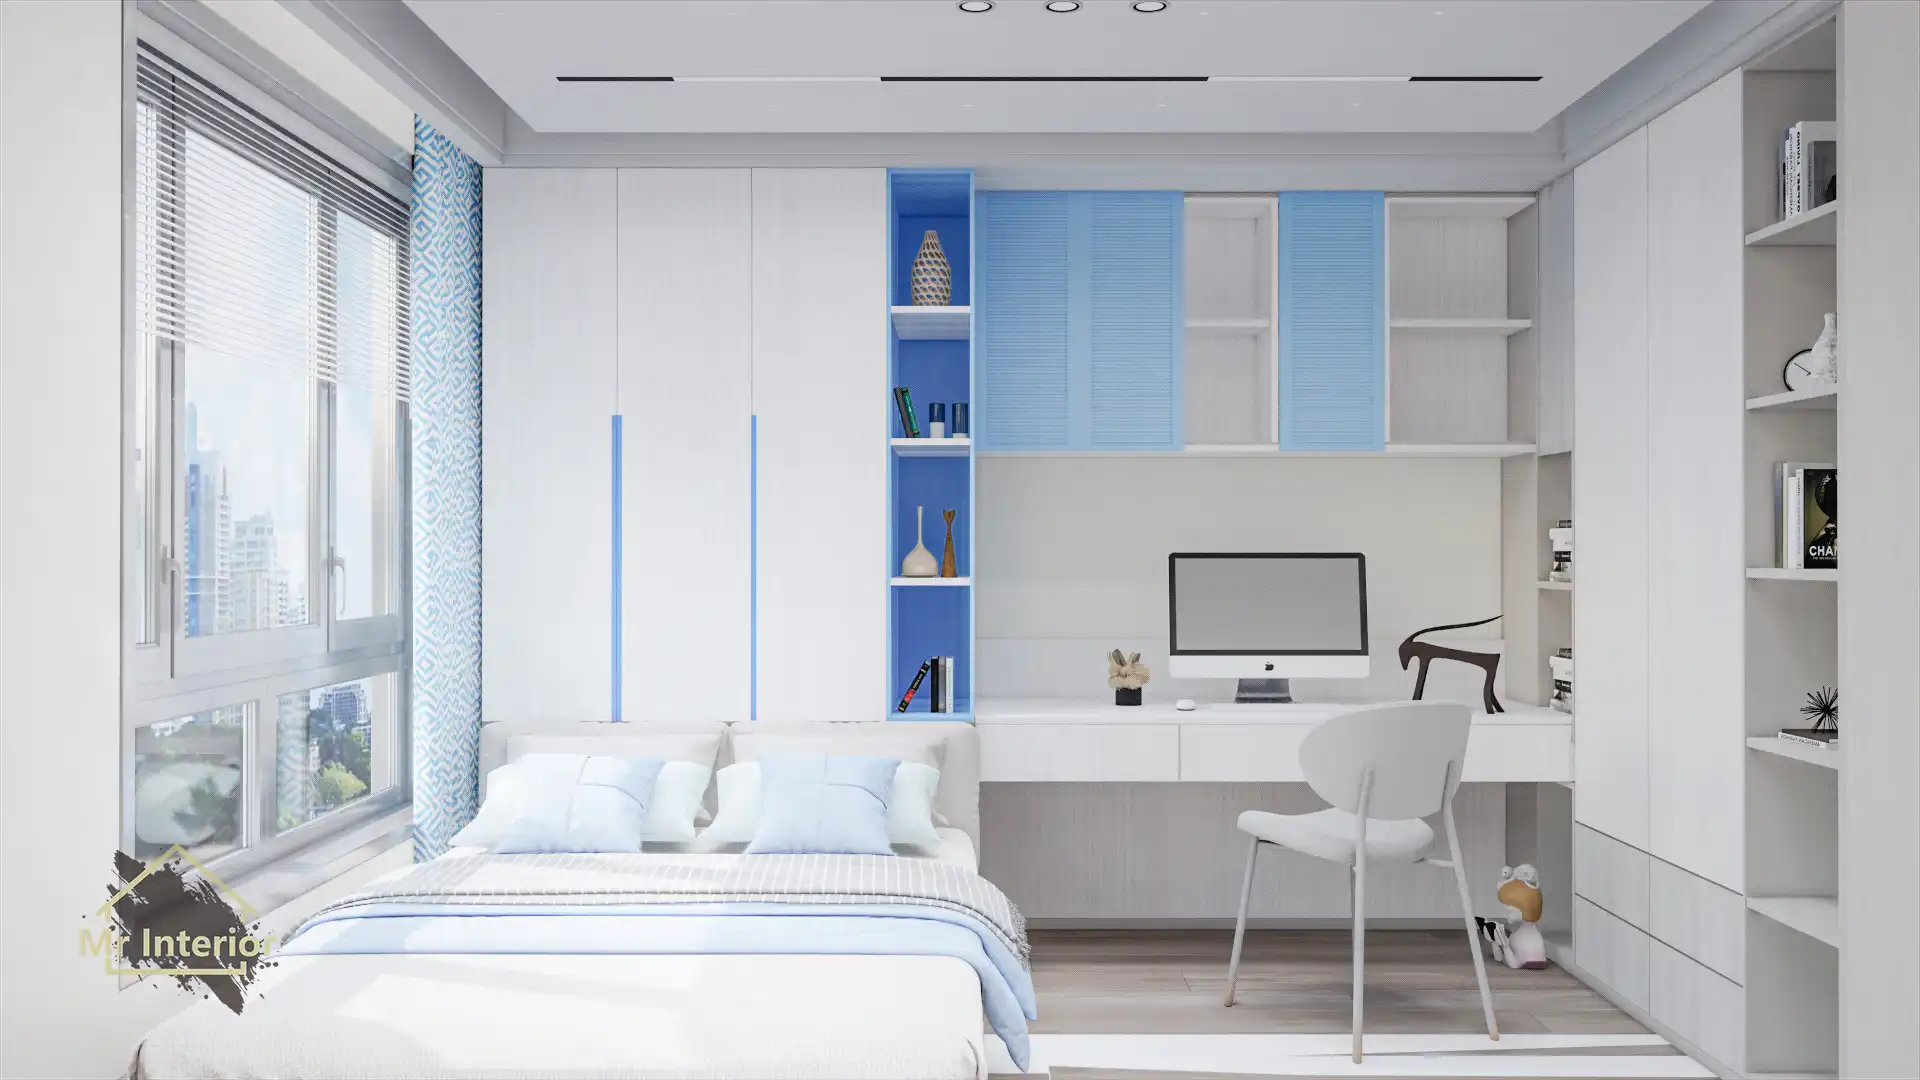 希臘風設計風格睡房，白色主調，愛琴海藍色點綴。床，書枱，衣櫃，書櫃。Mr Interior室內設計、裝修、傢俬風格。